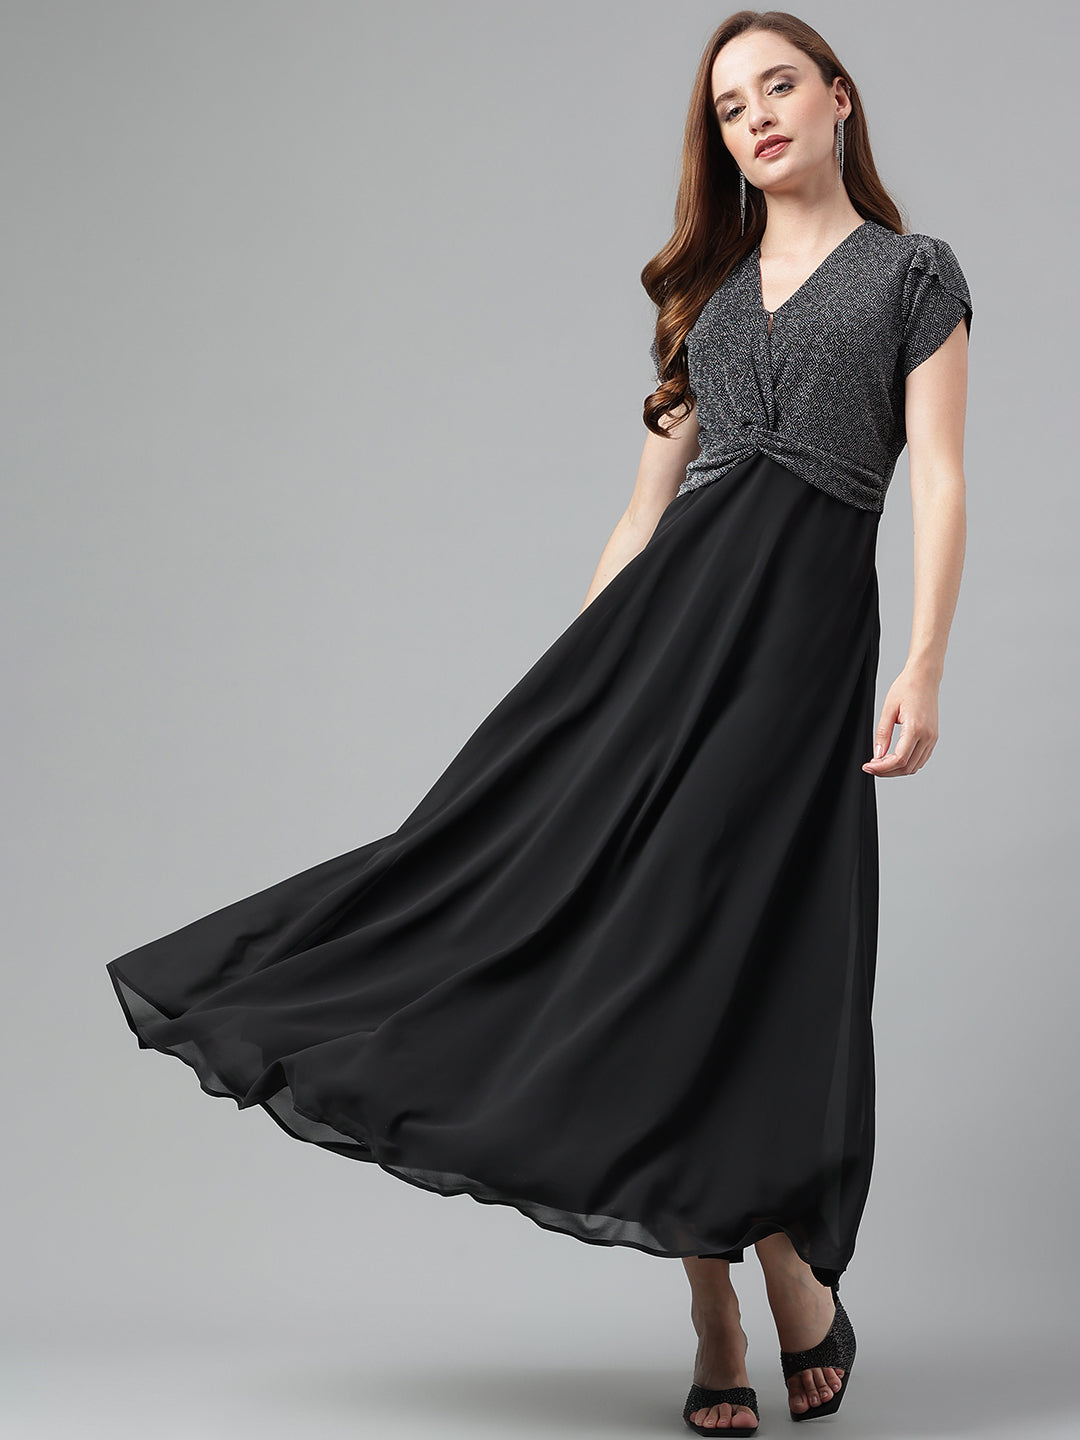 Black Cap Sleeves Solid Maxi Dress